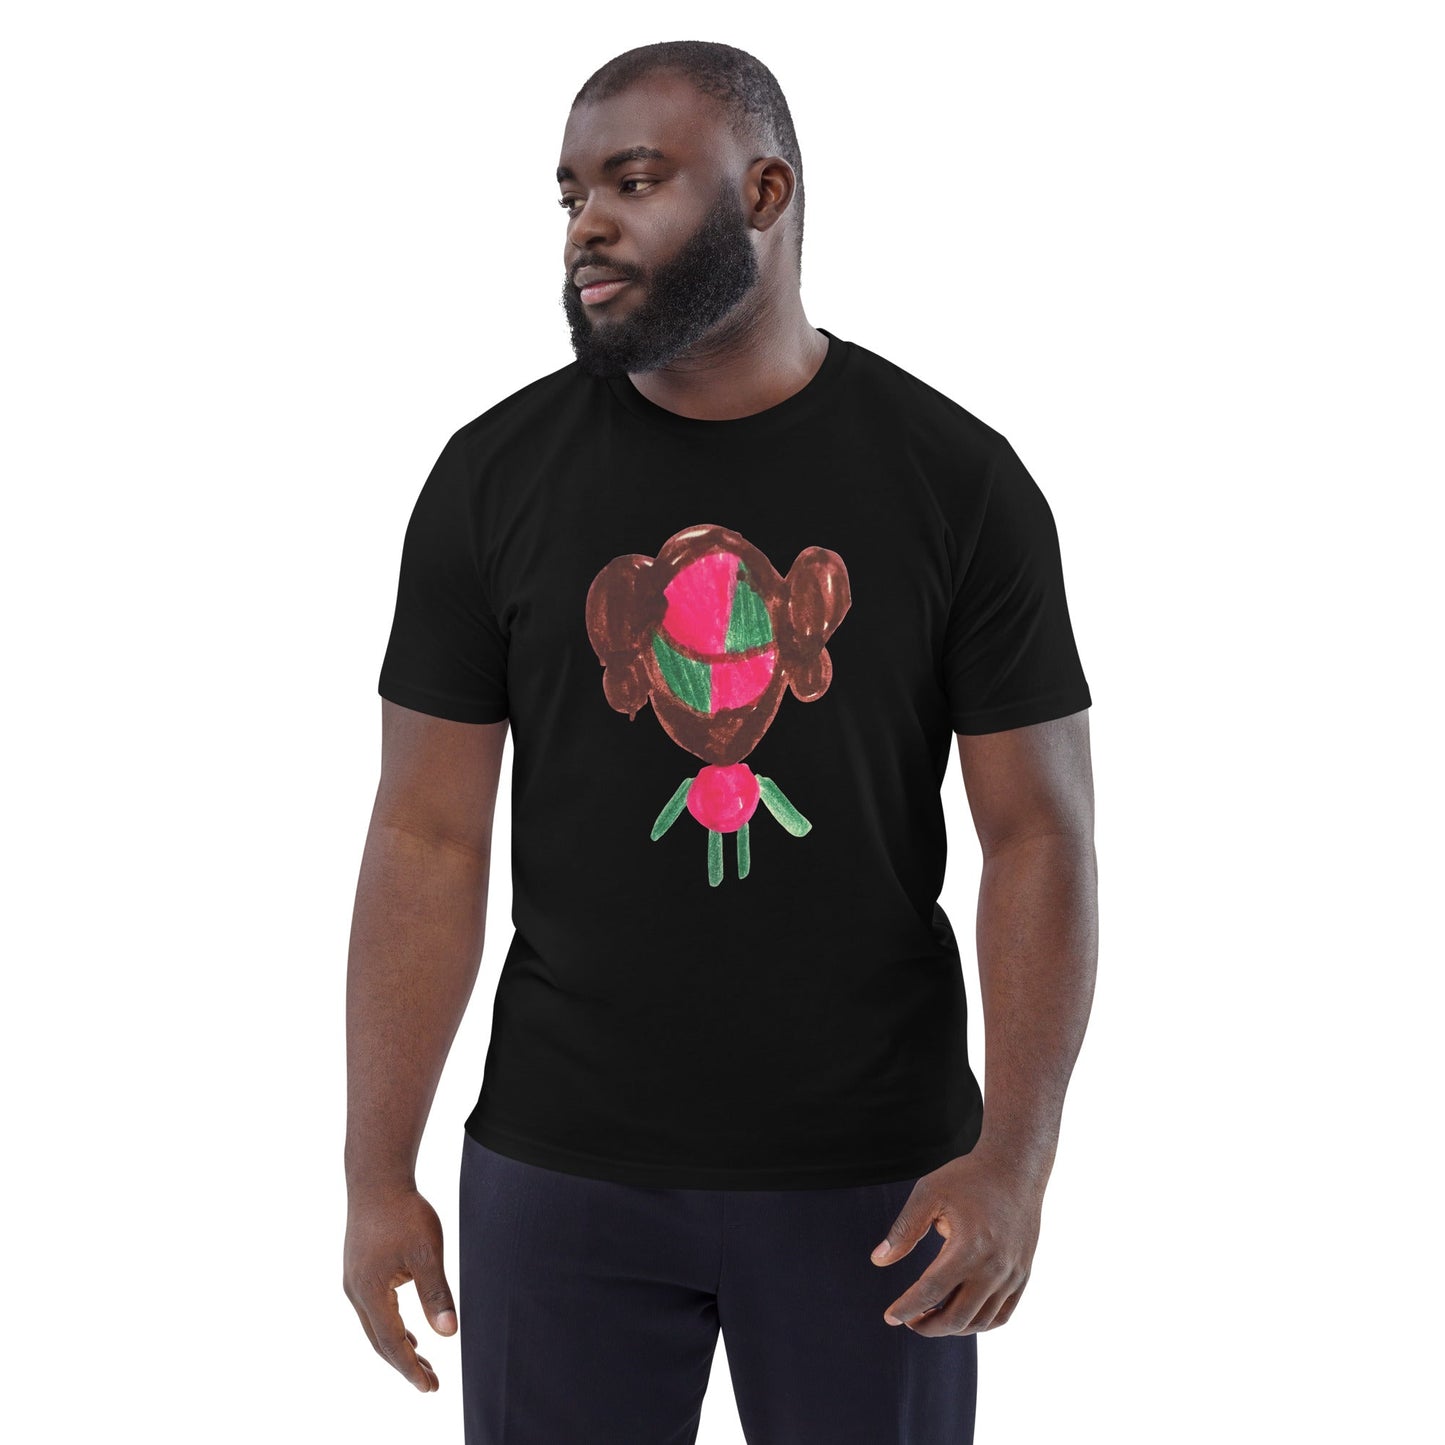 THING ORGANIC COTTON WEARABLE ART T-SHIRT-Wearable art t-shirt-Black-S-mysticalcherry